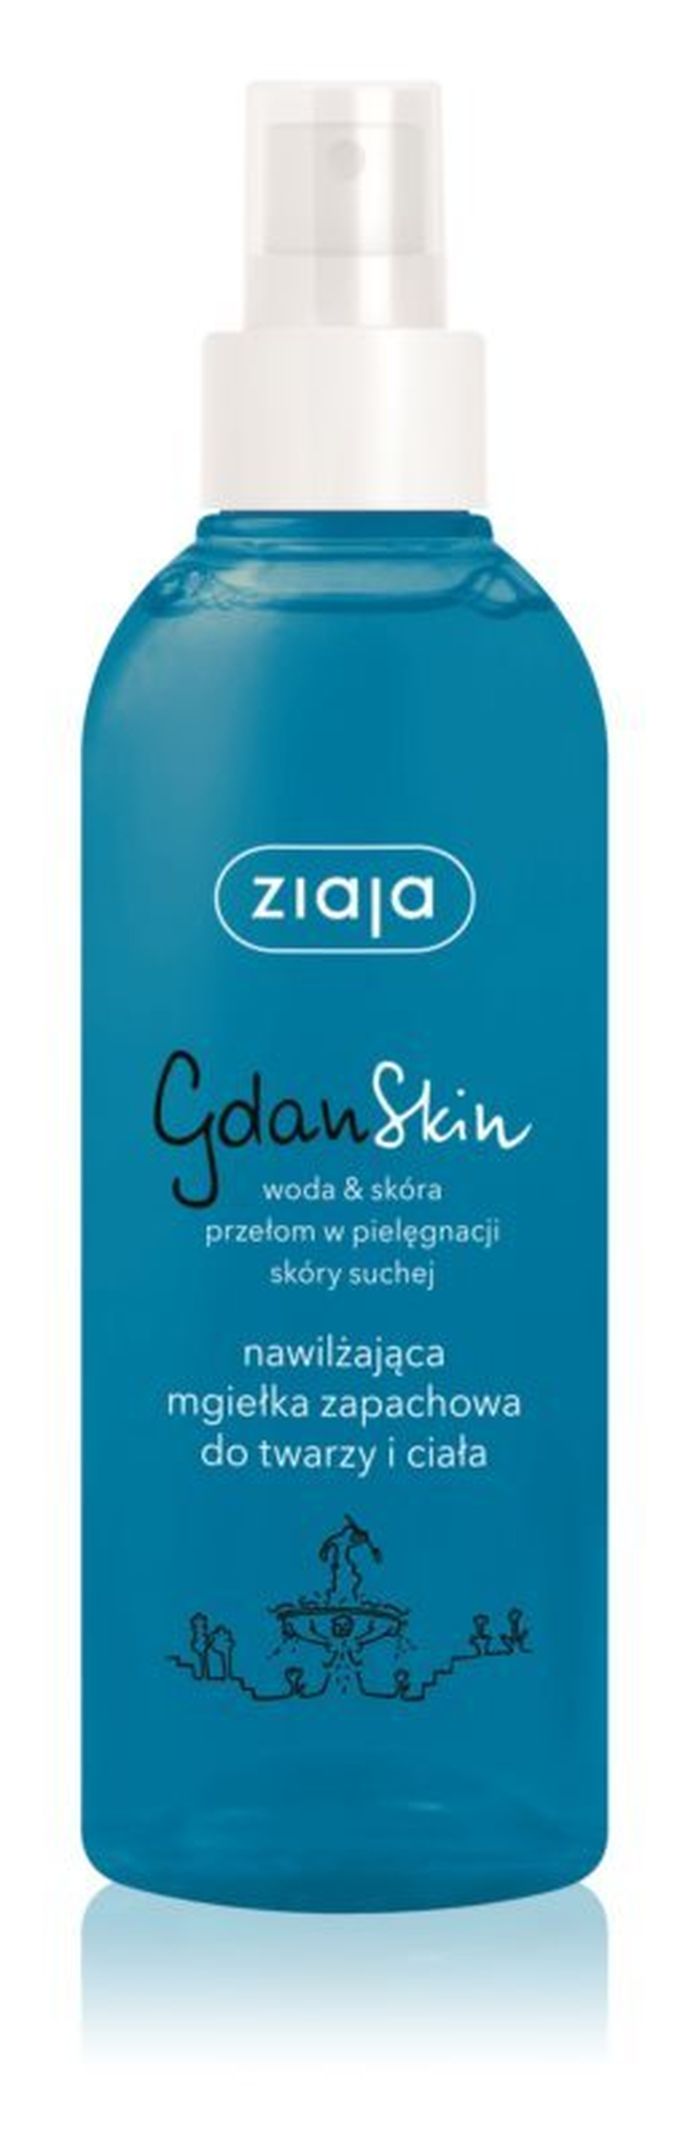 Hydratační mlha na obličej Gdan Skin, Ziaja, notino.cz, 94 Kč/200 ml